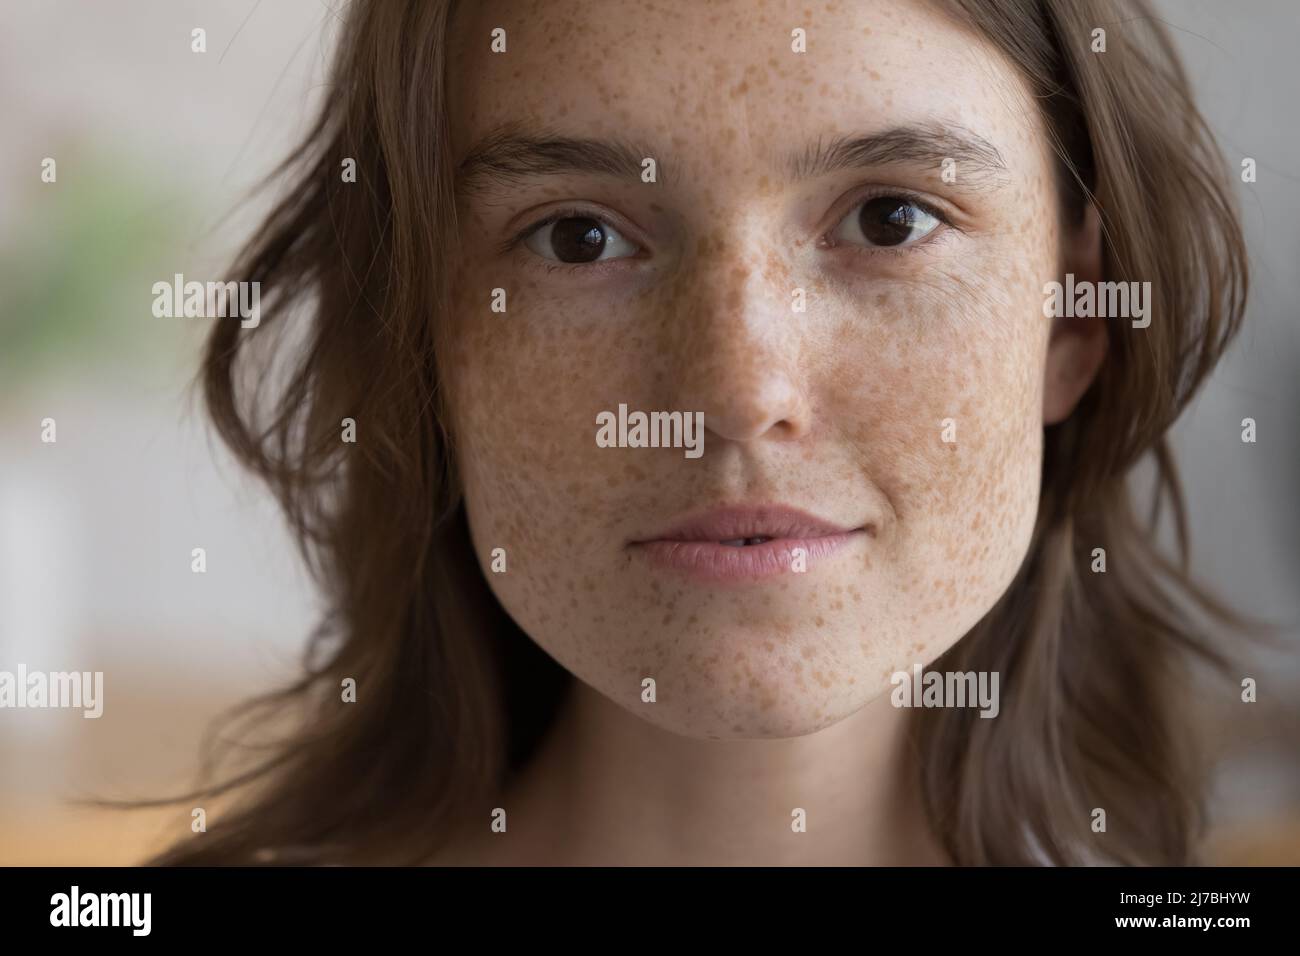 Ritratto di primo piano del viso della ragazza freckled serio Foto Stock